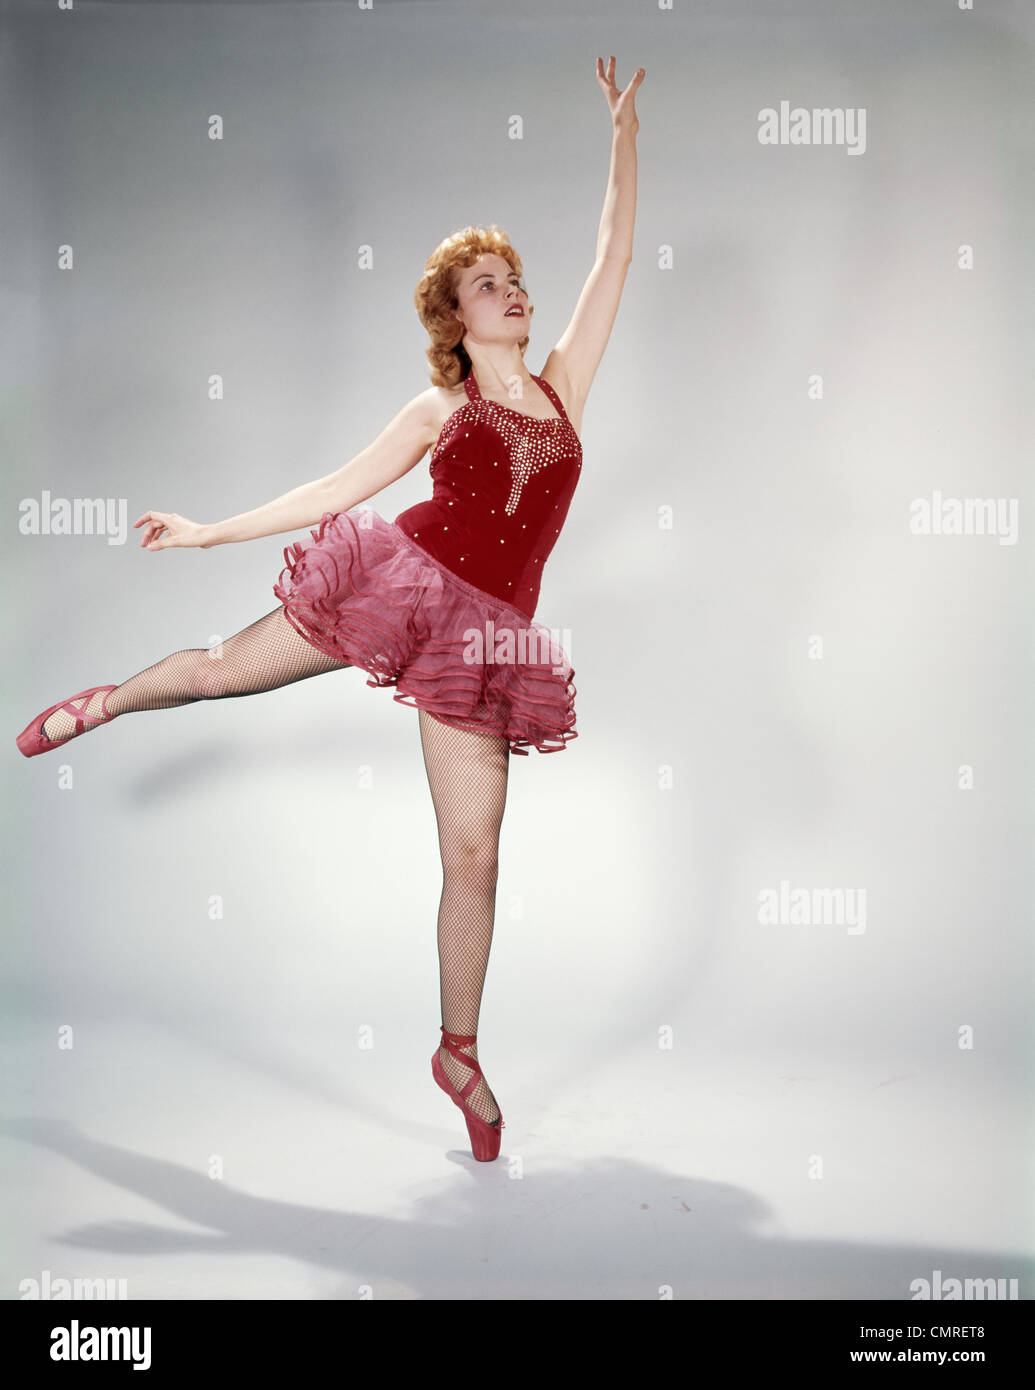 https://c8.alamy.com/comp/CMRET8/1960s-awkward-teen-girl-red-velvet-costume-pink-net-tutu-attempting-CMRET8.jpg